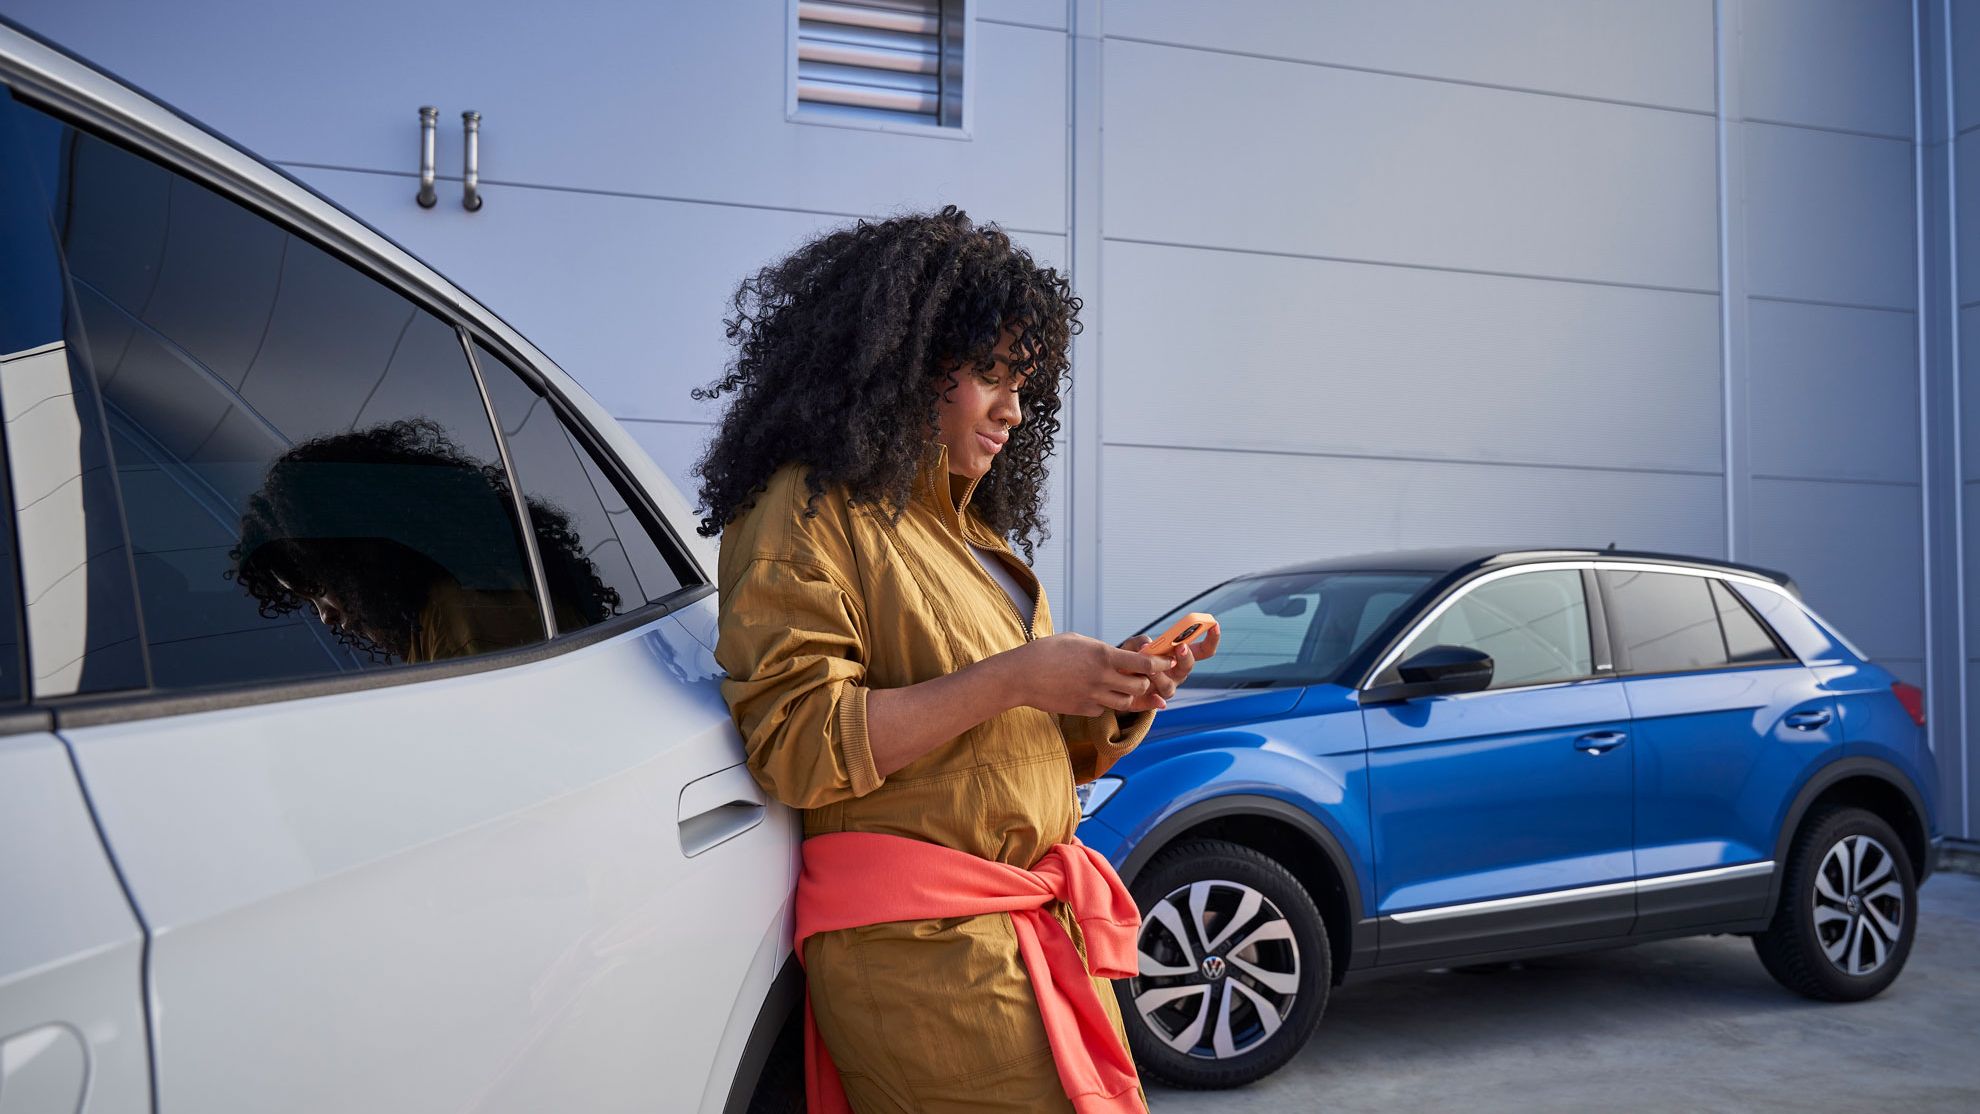 Eine Frau steht angelehnt an einem Volkswagen und schaut dabei auf ihr Smartphone